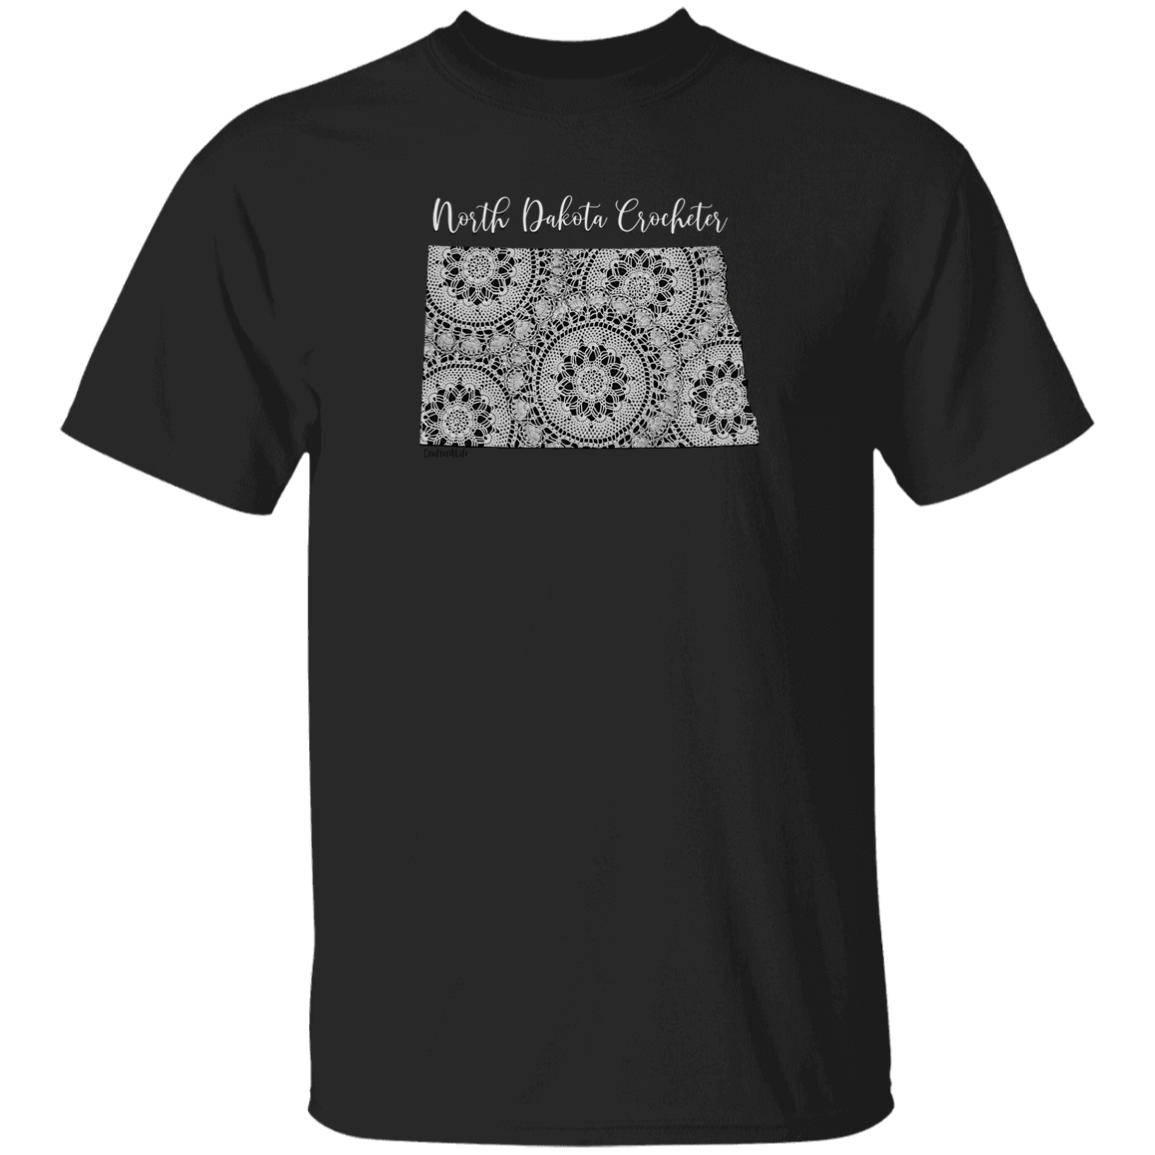 North Dakota Crocheter T-Shirt